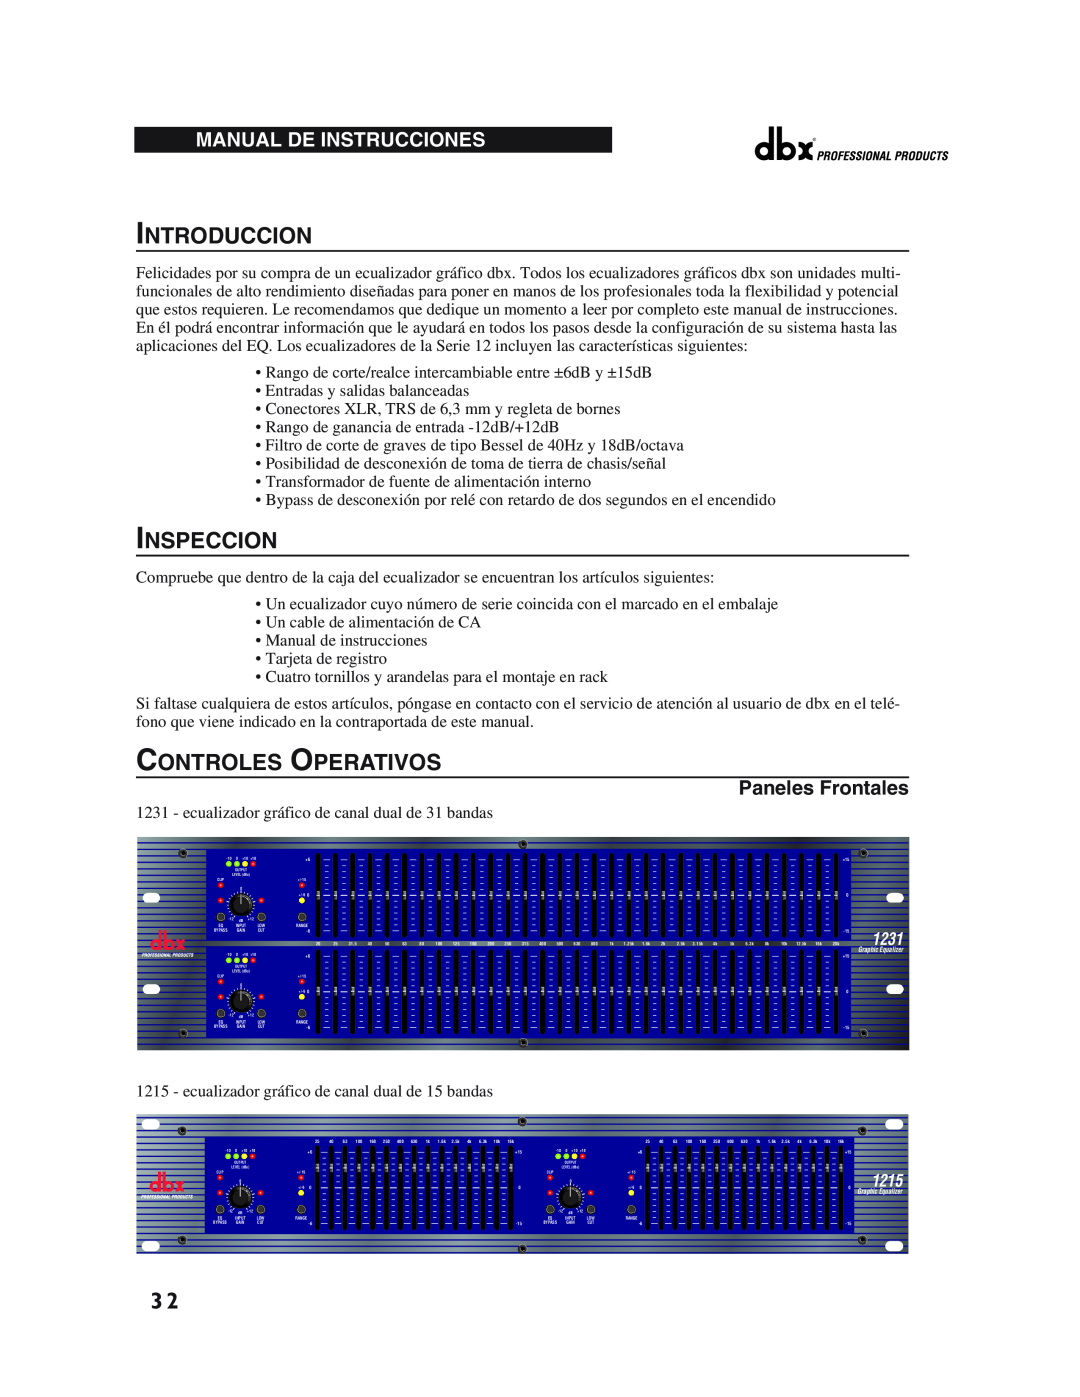 dbx Pro 12 Series Introduccion, Inspeccion, Controles Operativos, Manual De Instrucciones, Paneles Frontales, 1231, 1215 